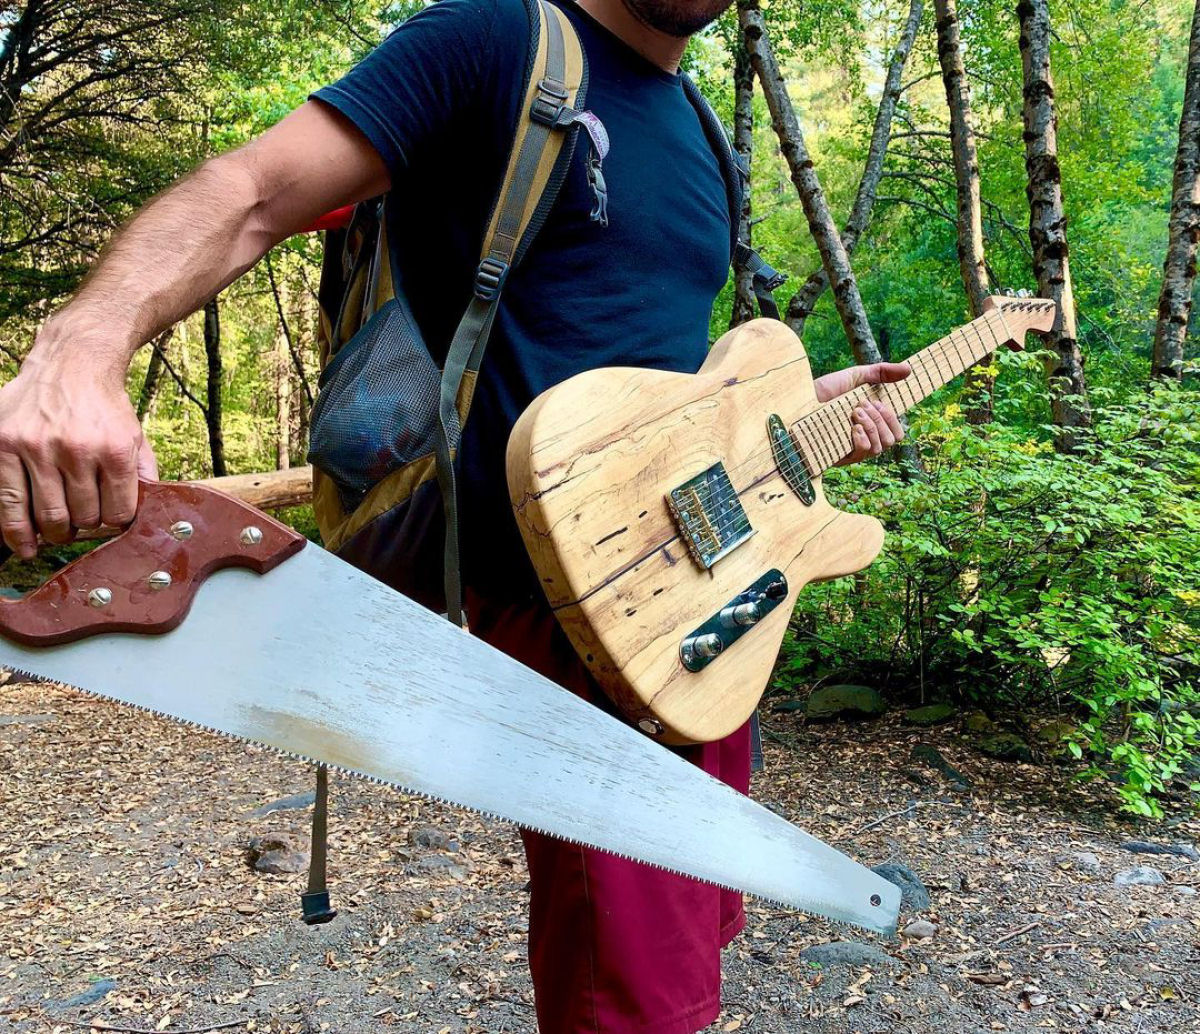 Luthier constrói guitarra com madeira e materiais coletados na floresta